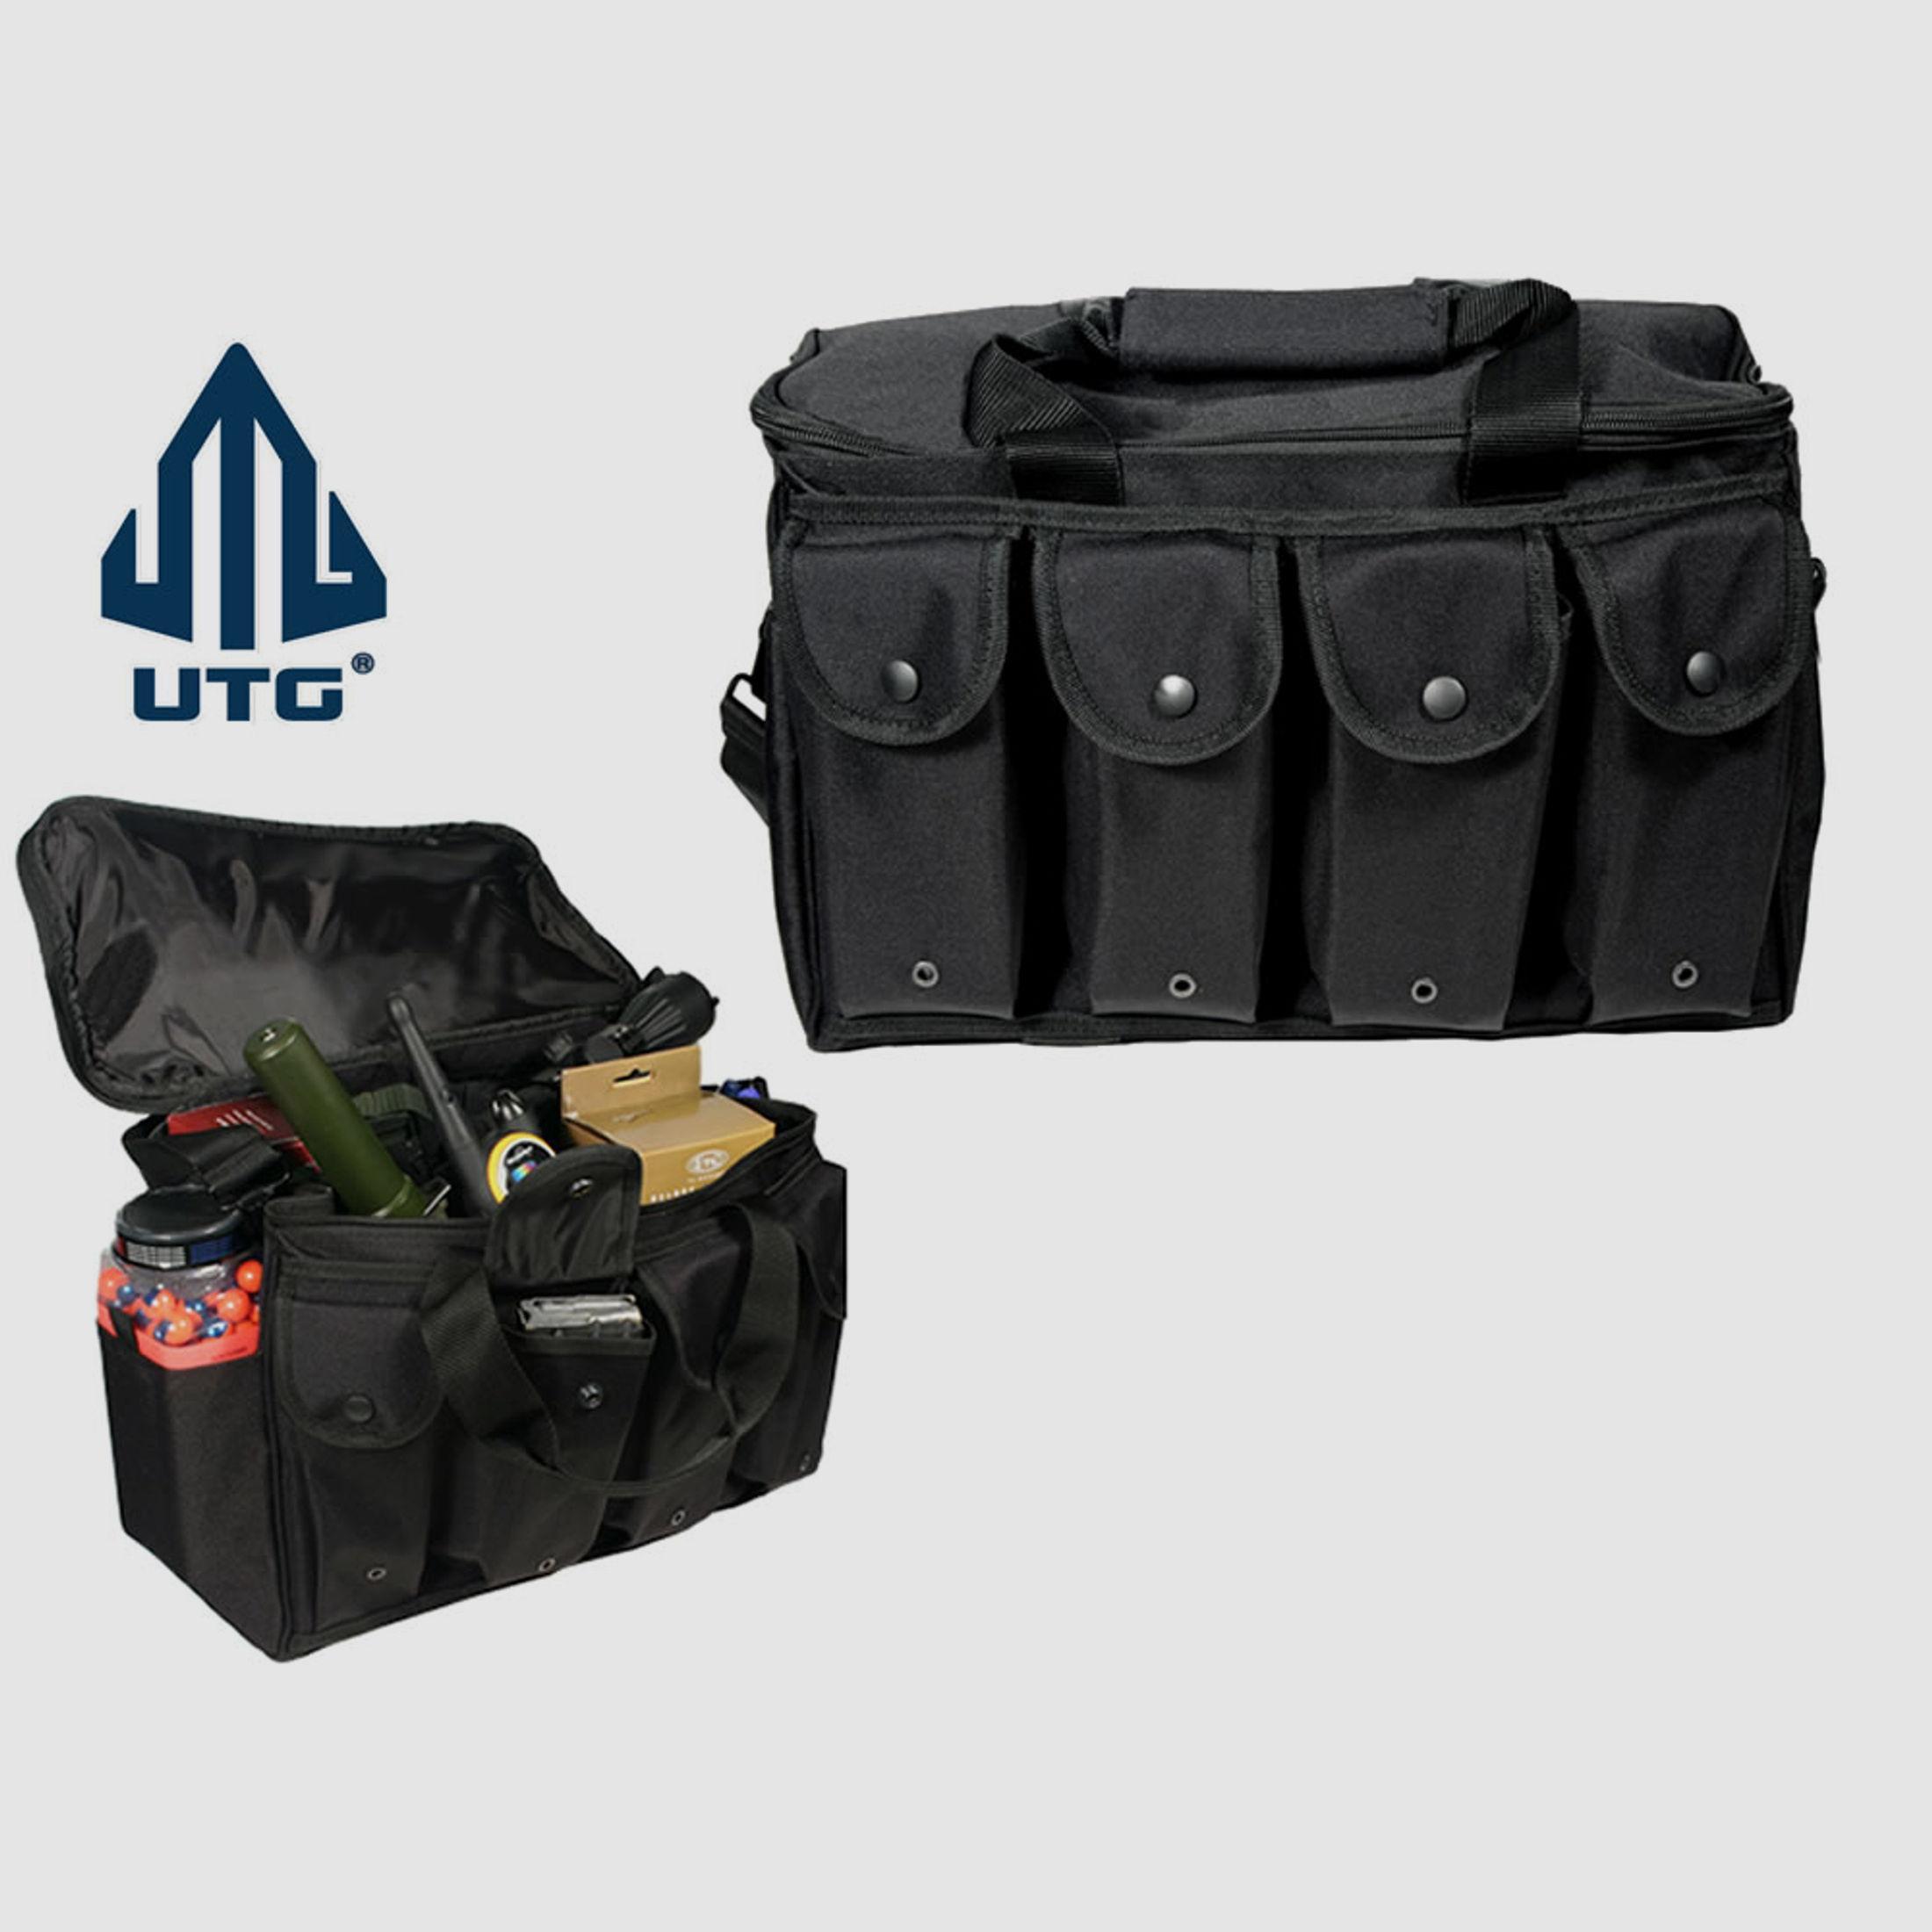 Pistolenstasche Transporttasche UTG Tactical Shooters Bag 38 x 30 x 28 cm Nylon 4 Magazintaschen schwarz